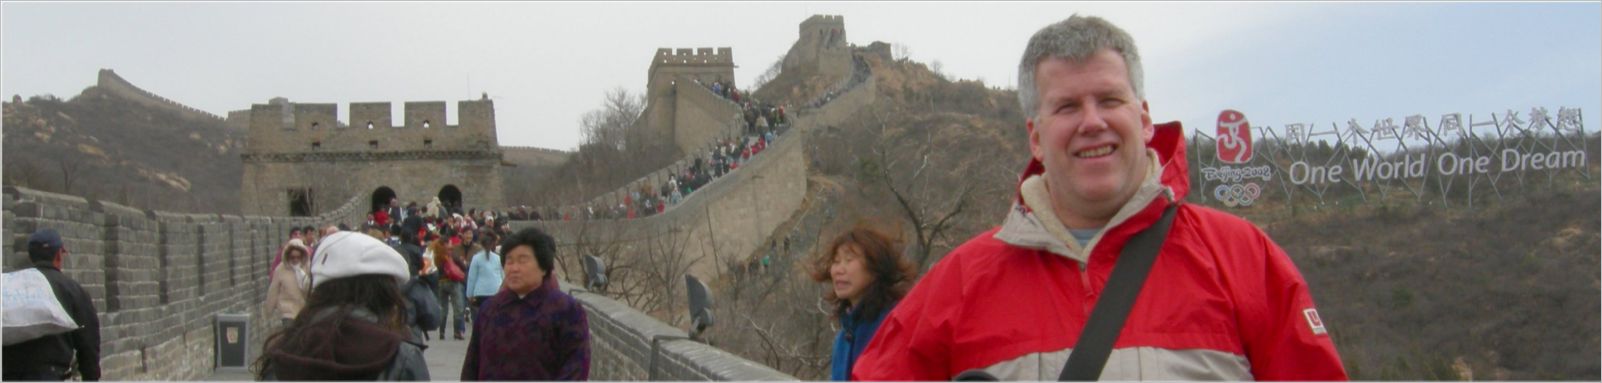 Bilbo Great Wall wide